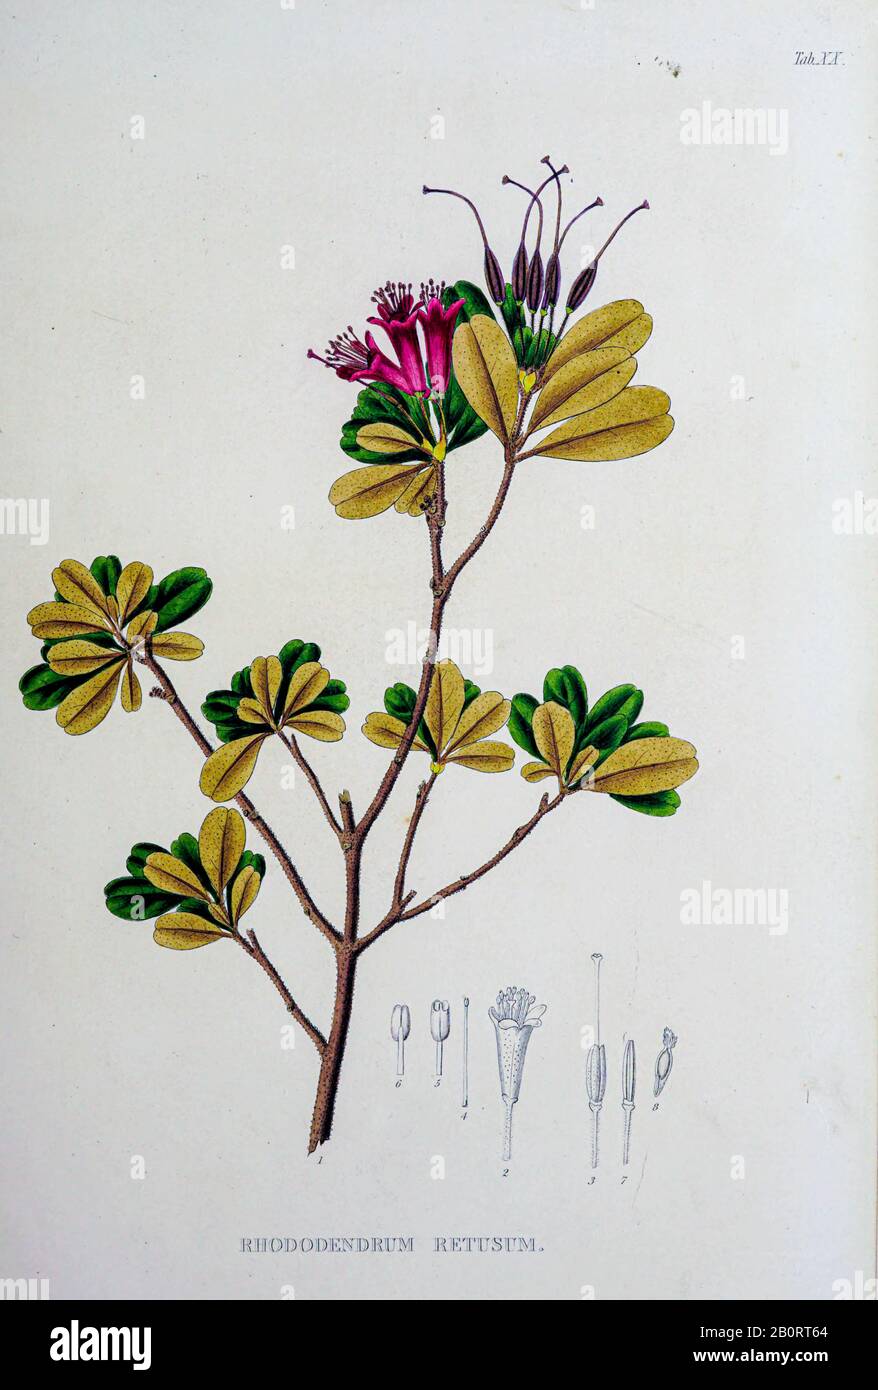 Rhododendron retusum (Rhododendrum retusum) from the 19th century manuscript 'Plantae Javanicae rariores, descriptae iconibusque illustratae, quas in Stock Photo